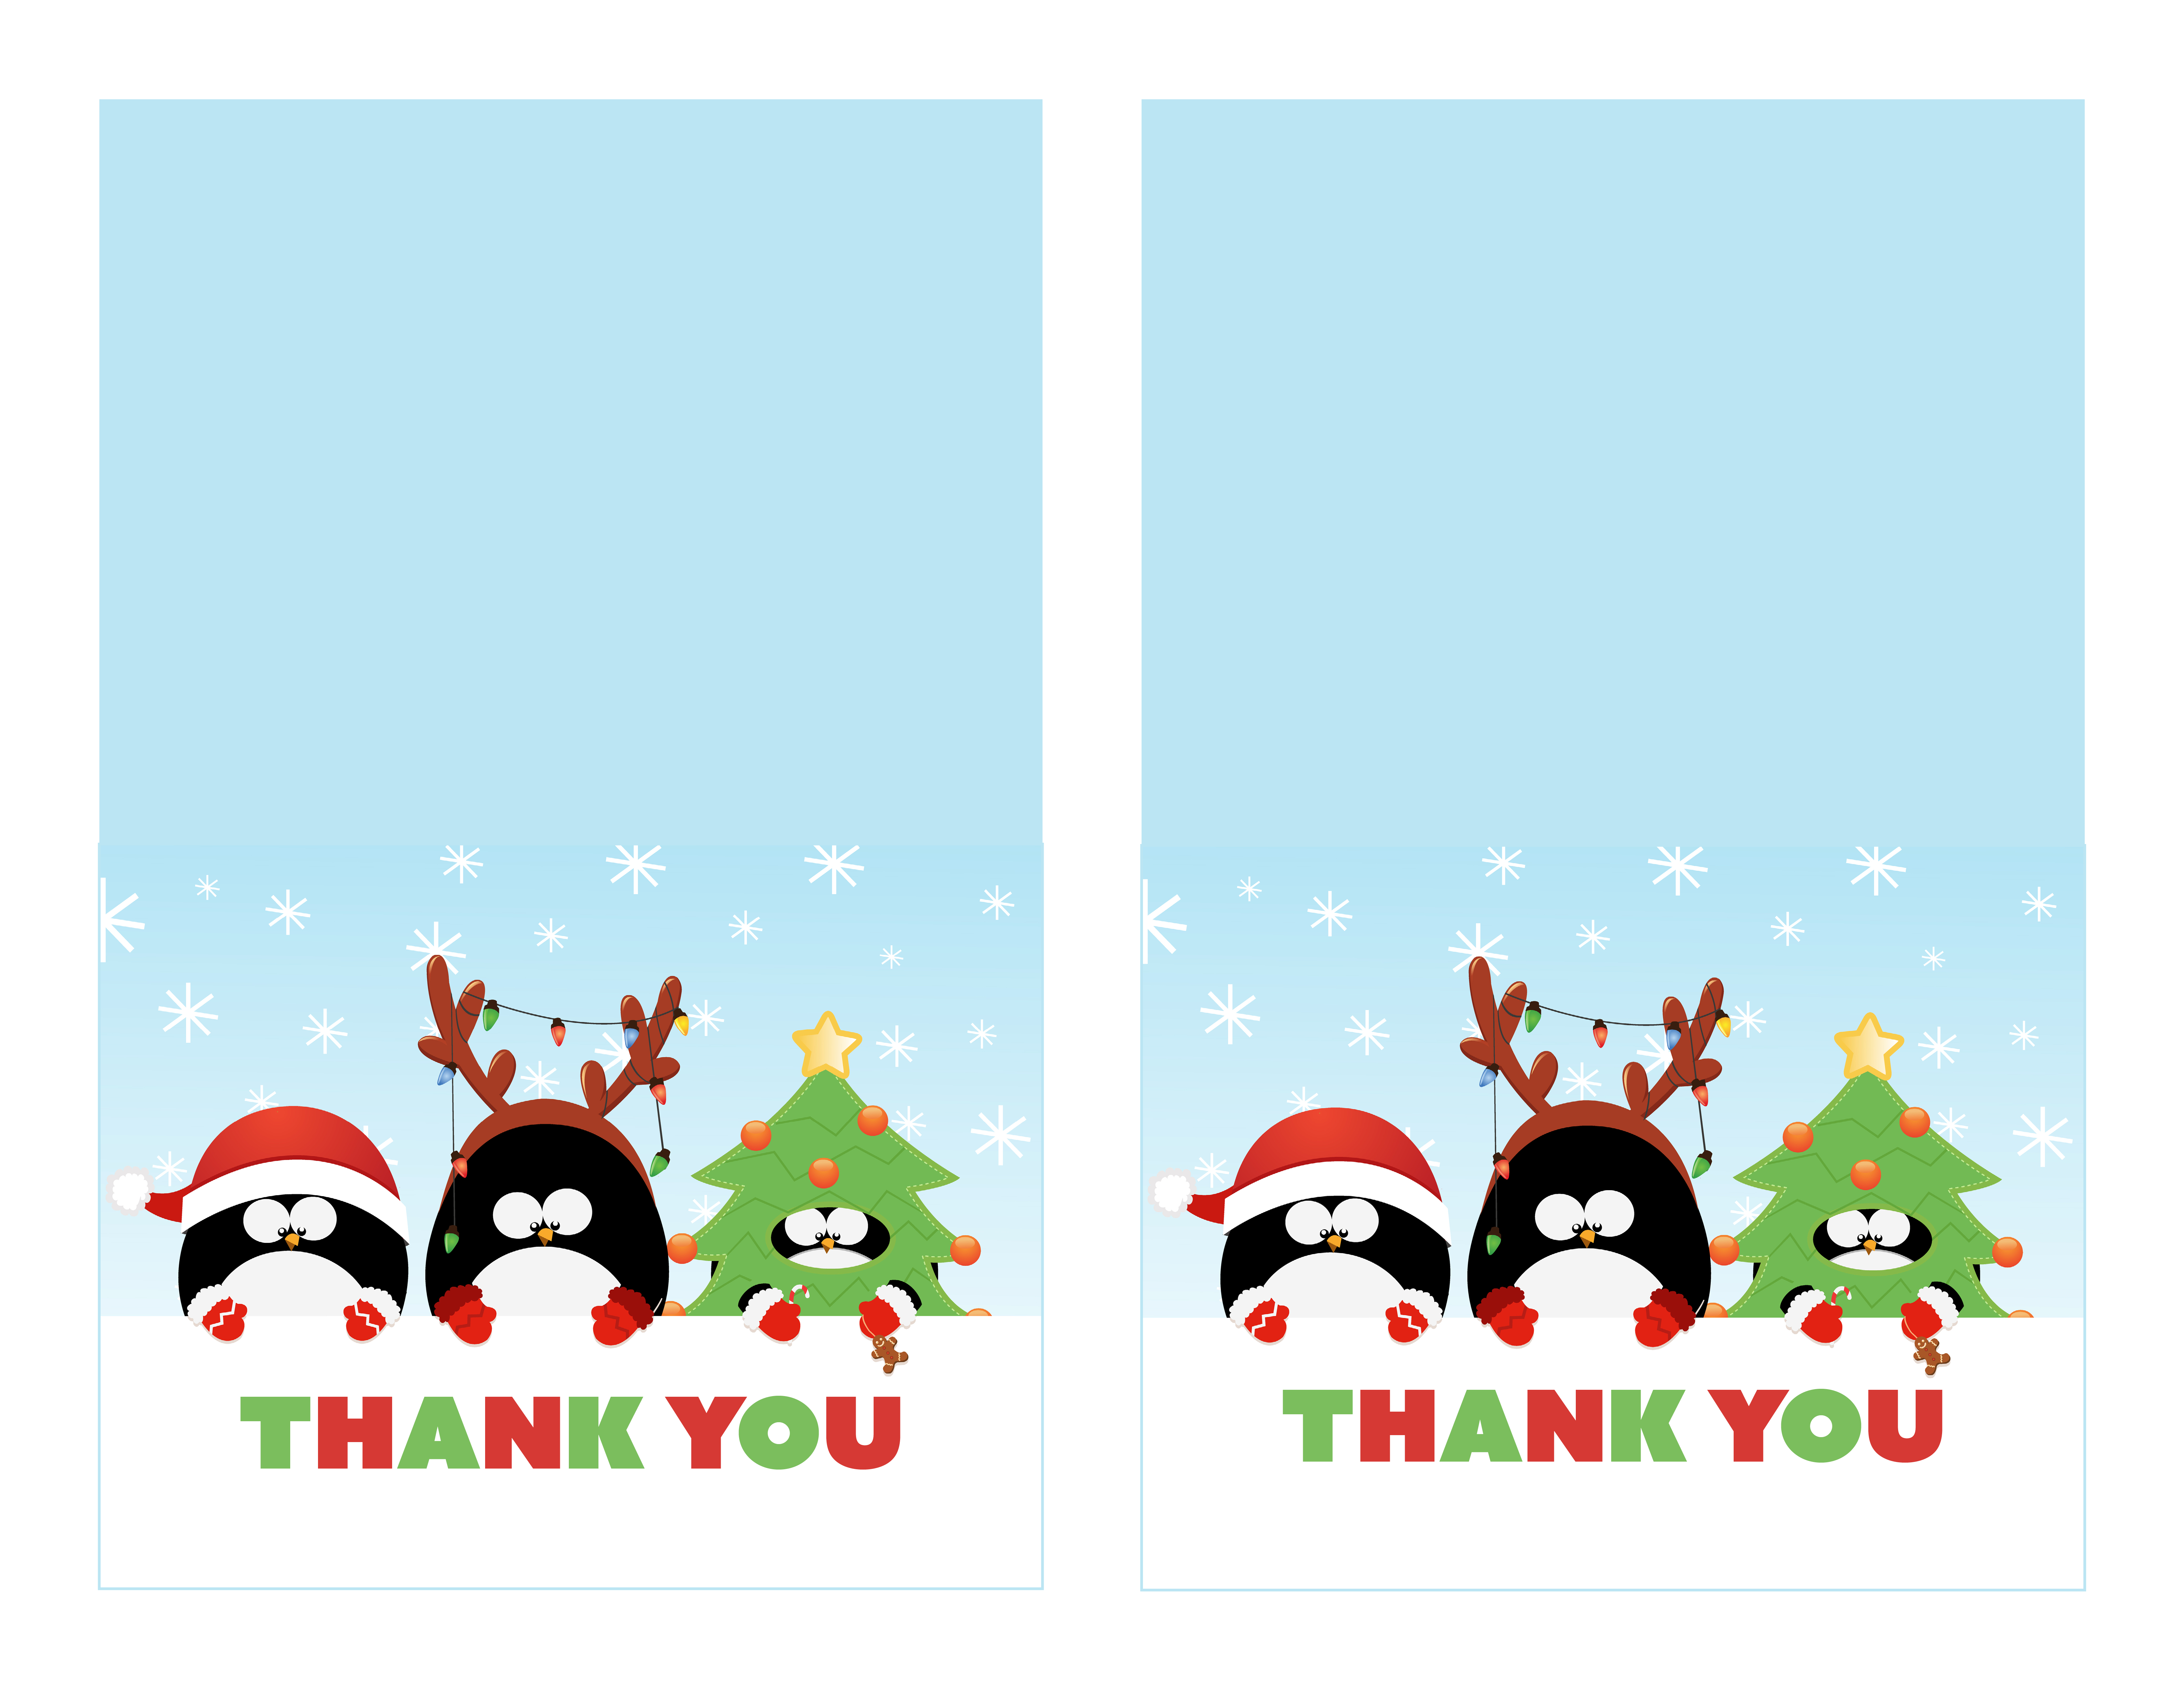 Free Printable Christmas Thank You Cards - Printable Cards - Christmas Thank You Cards Printable Free